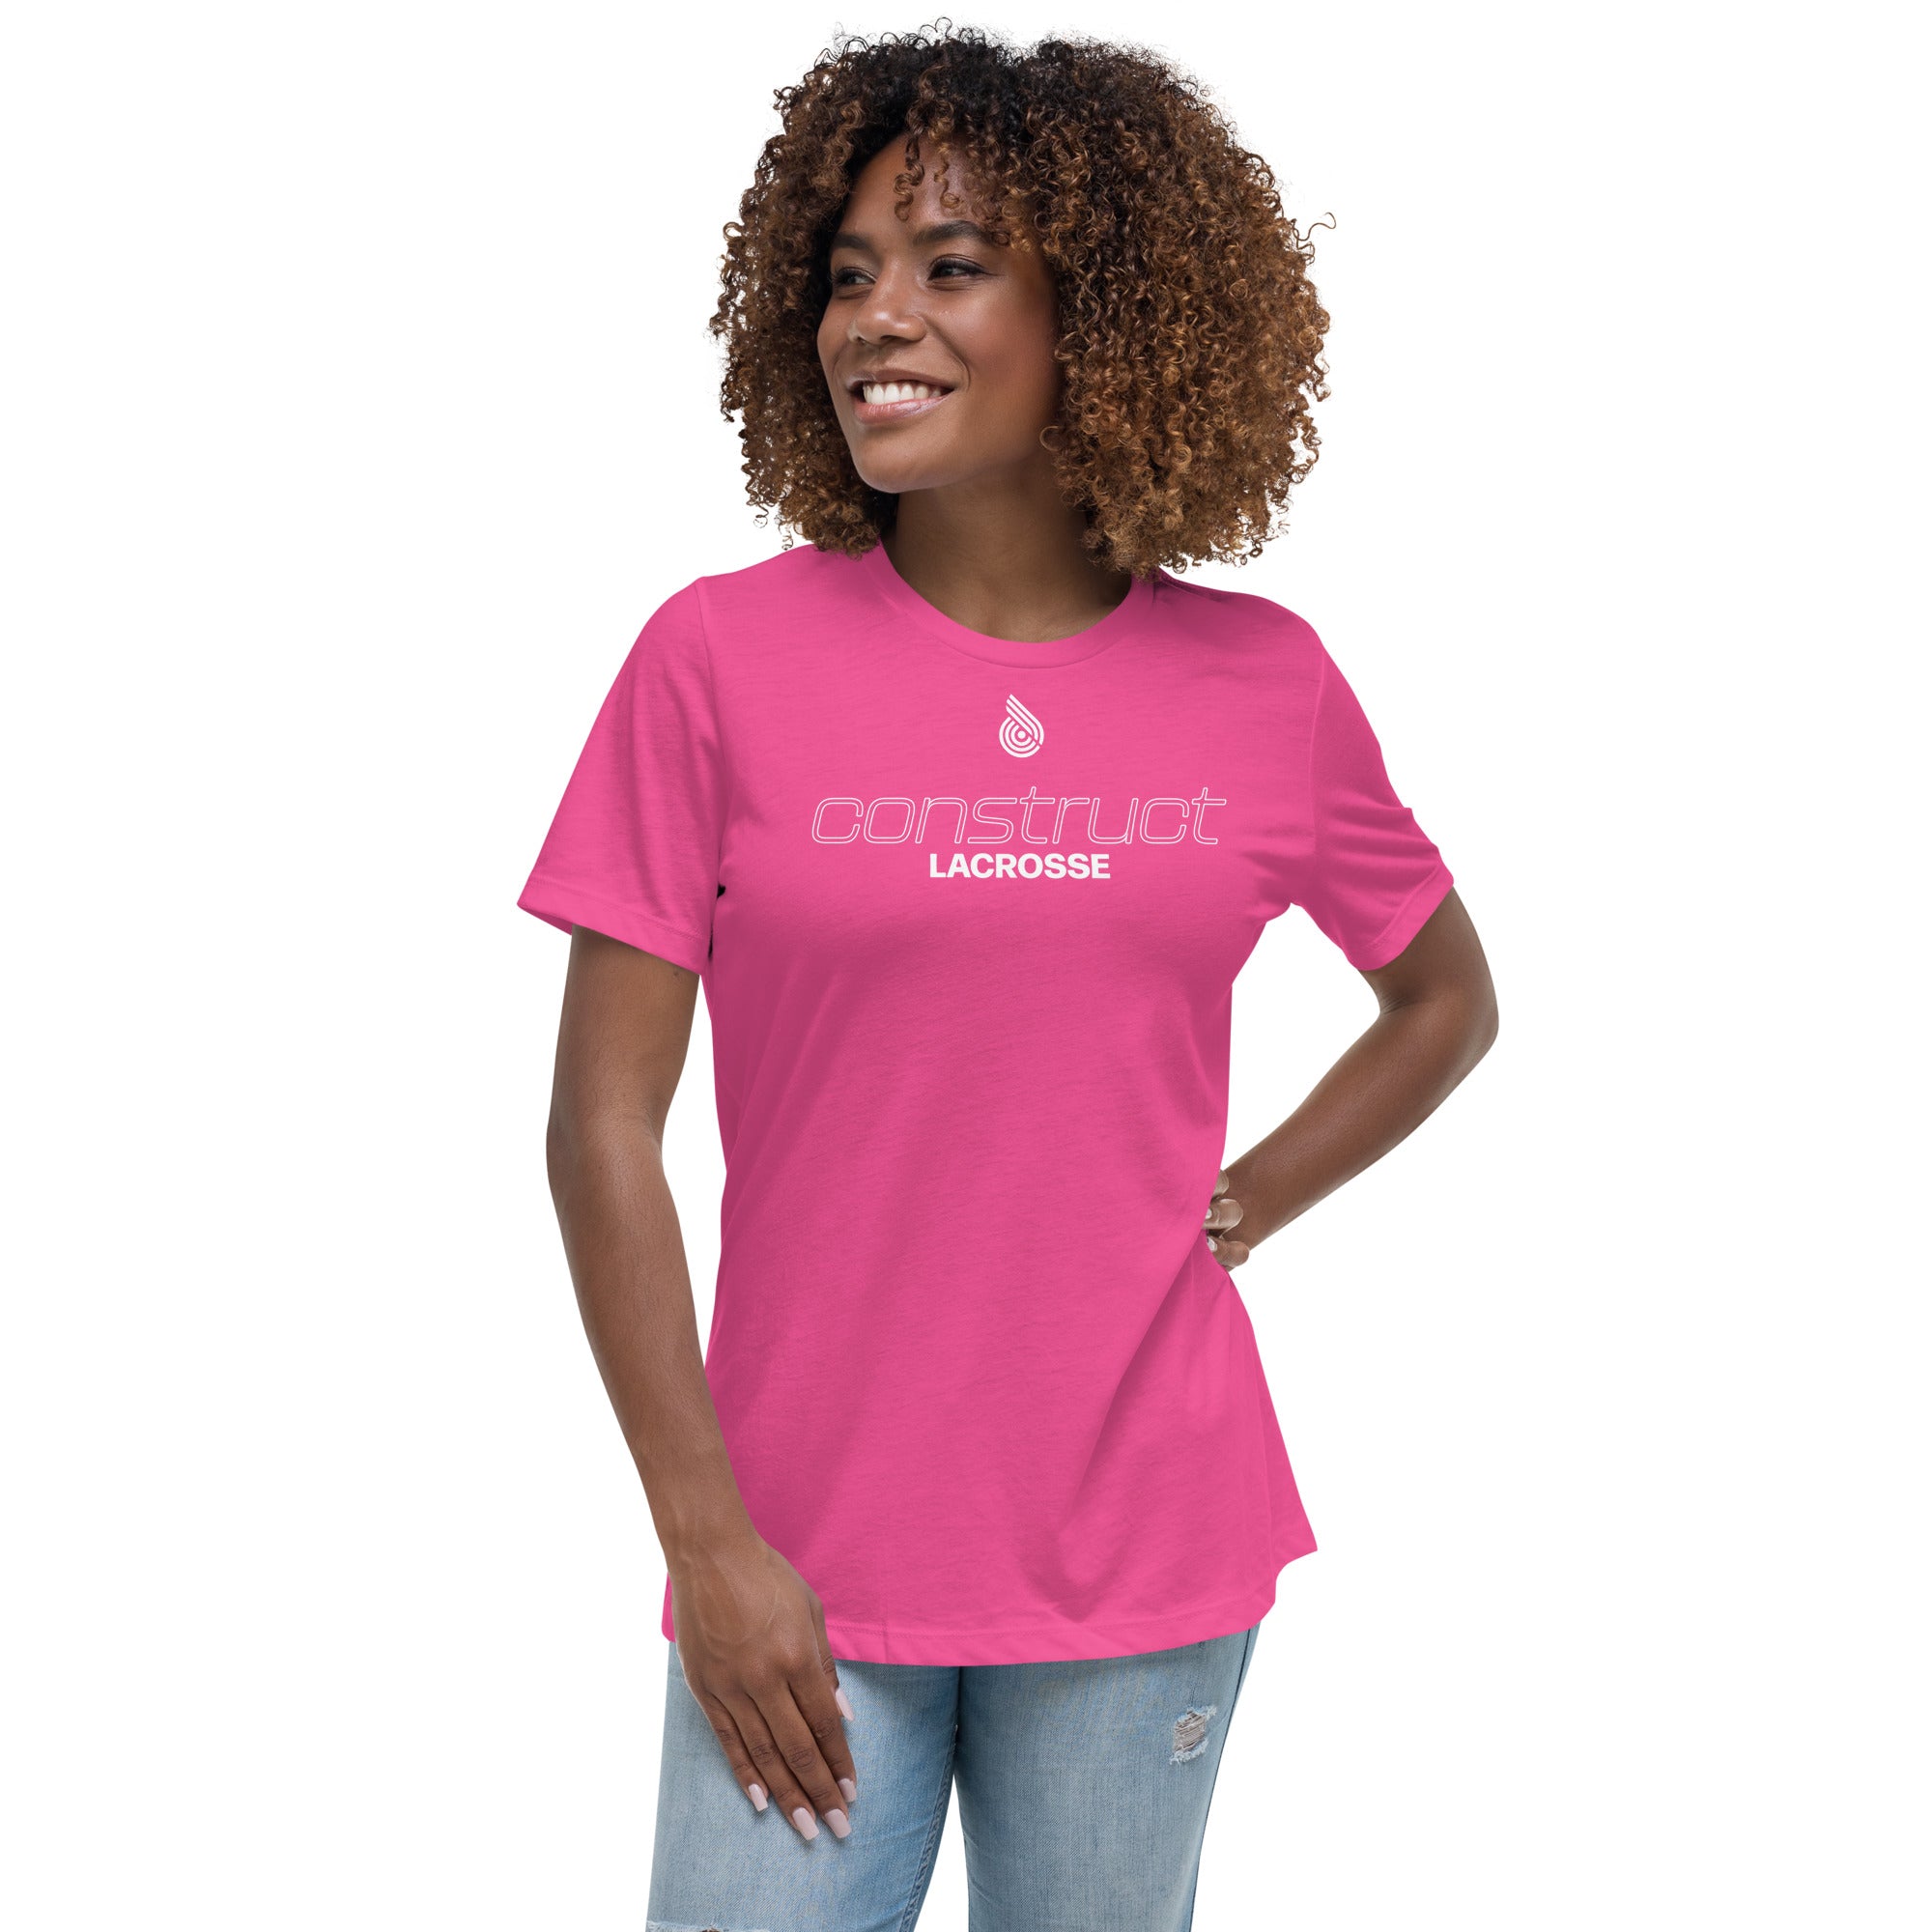 Construct Women's Relaxed T-Shirt